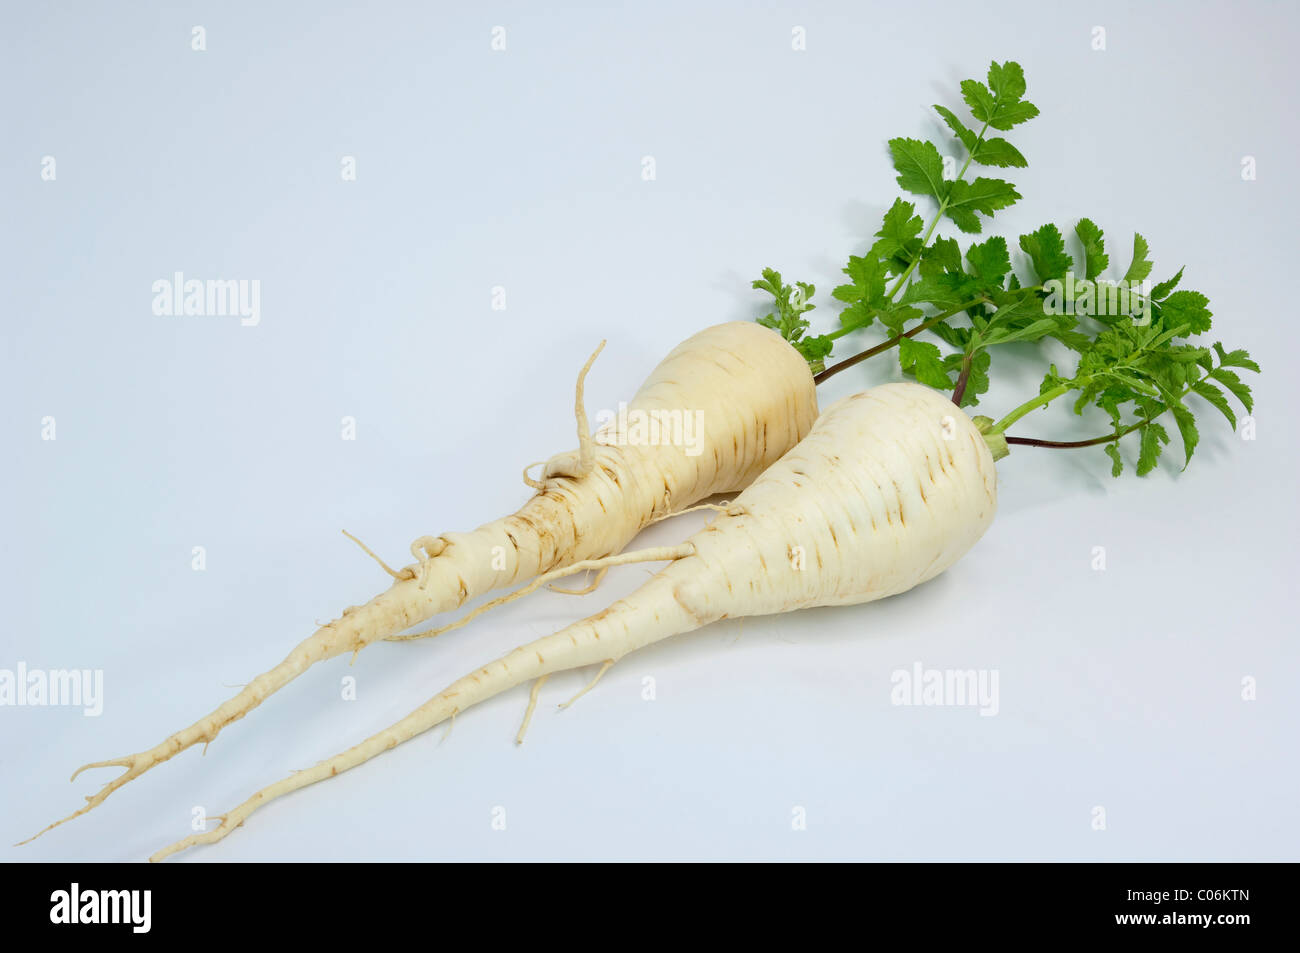 La alcachofa (Pastinaca sativa). Zanahoria-como raíces comestibles con hojas. Studio picture contra un fondo blanco. Foto de stock